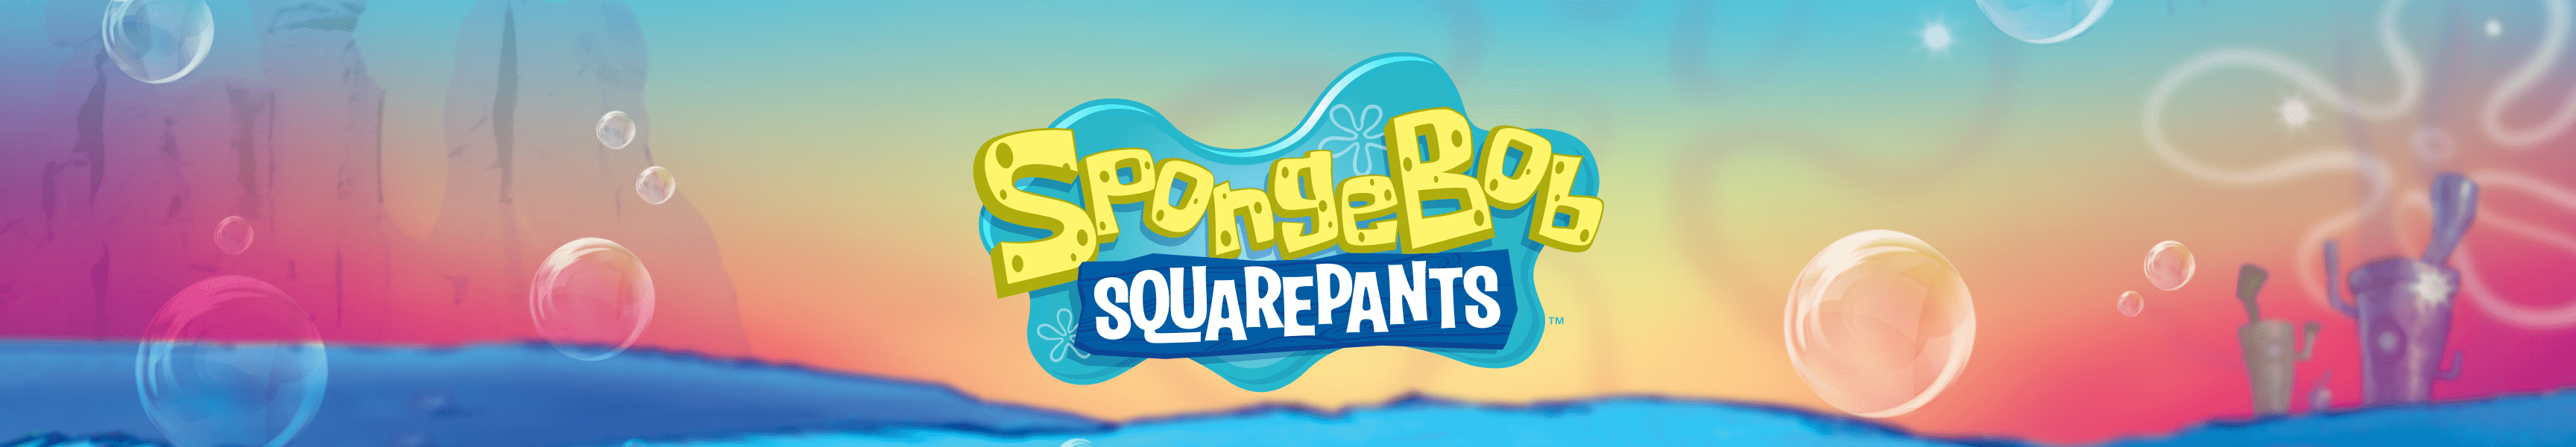 SpongeBob SquarePants 3D in the Sea